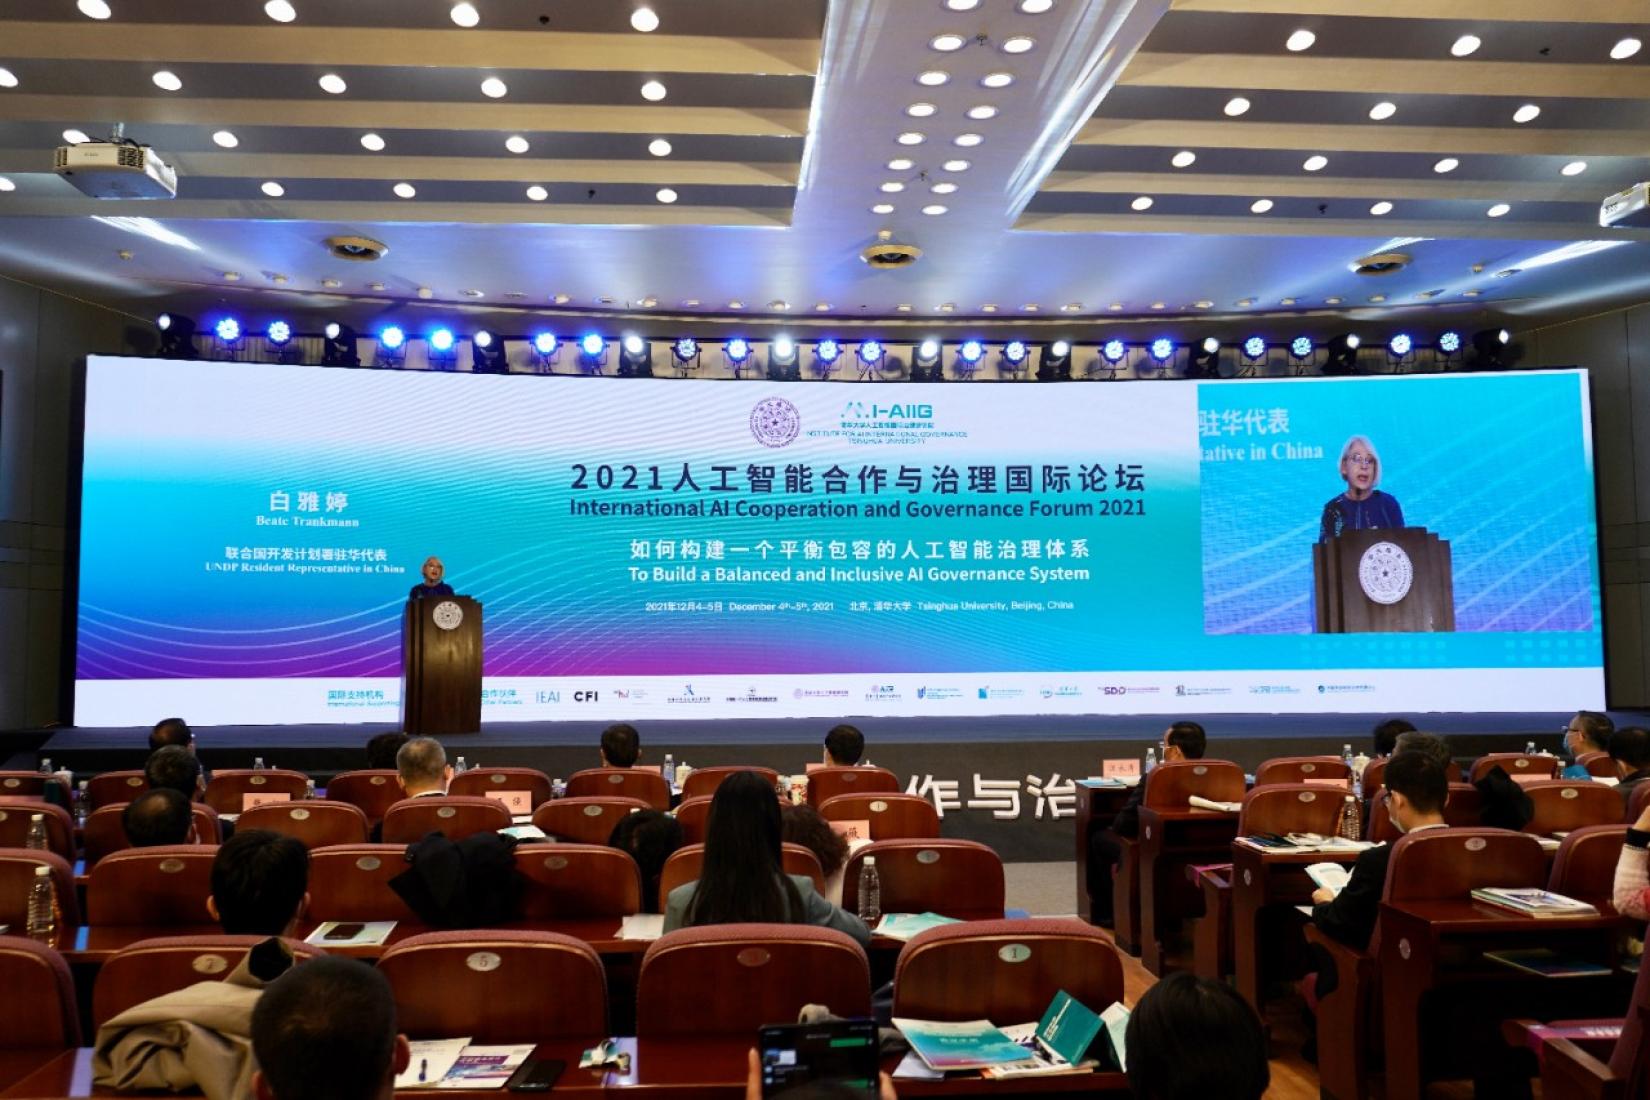 Beate Trankmann at Tsinghua AI Forum